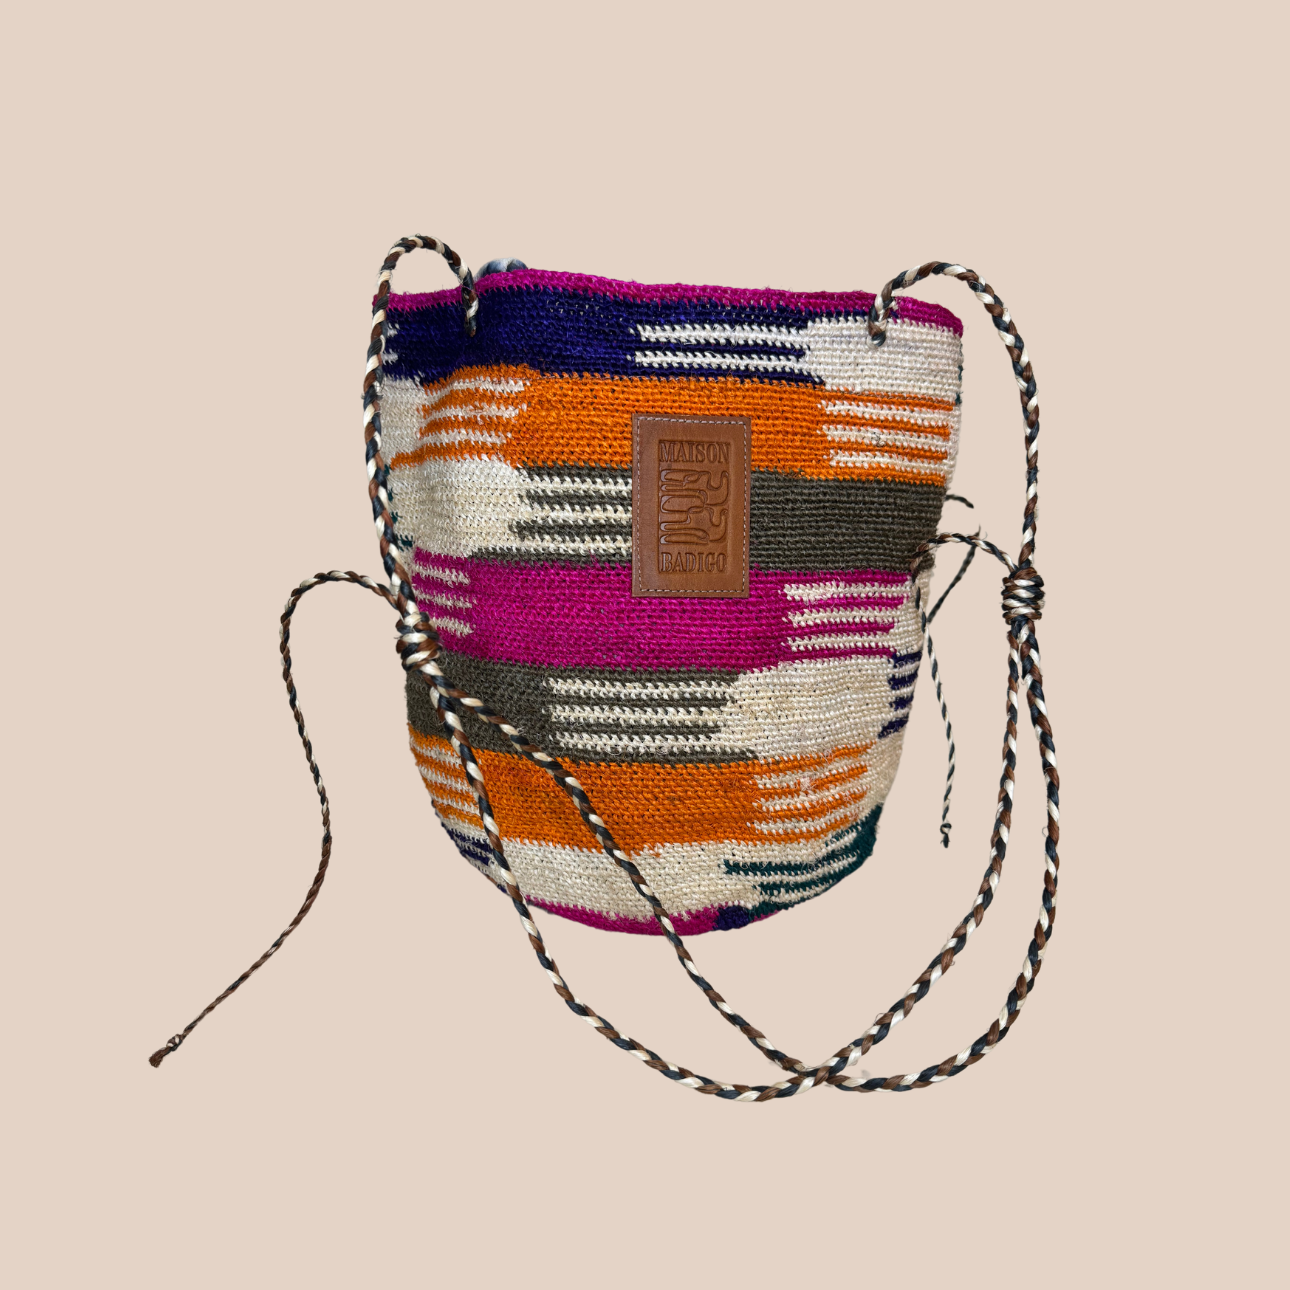 Image du sac ROSALITA de Maison Badigo, sac en fibres naturelles de cactus multicolore unique et tendance